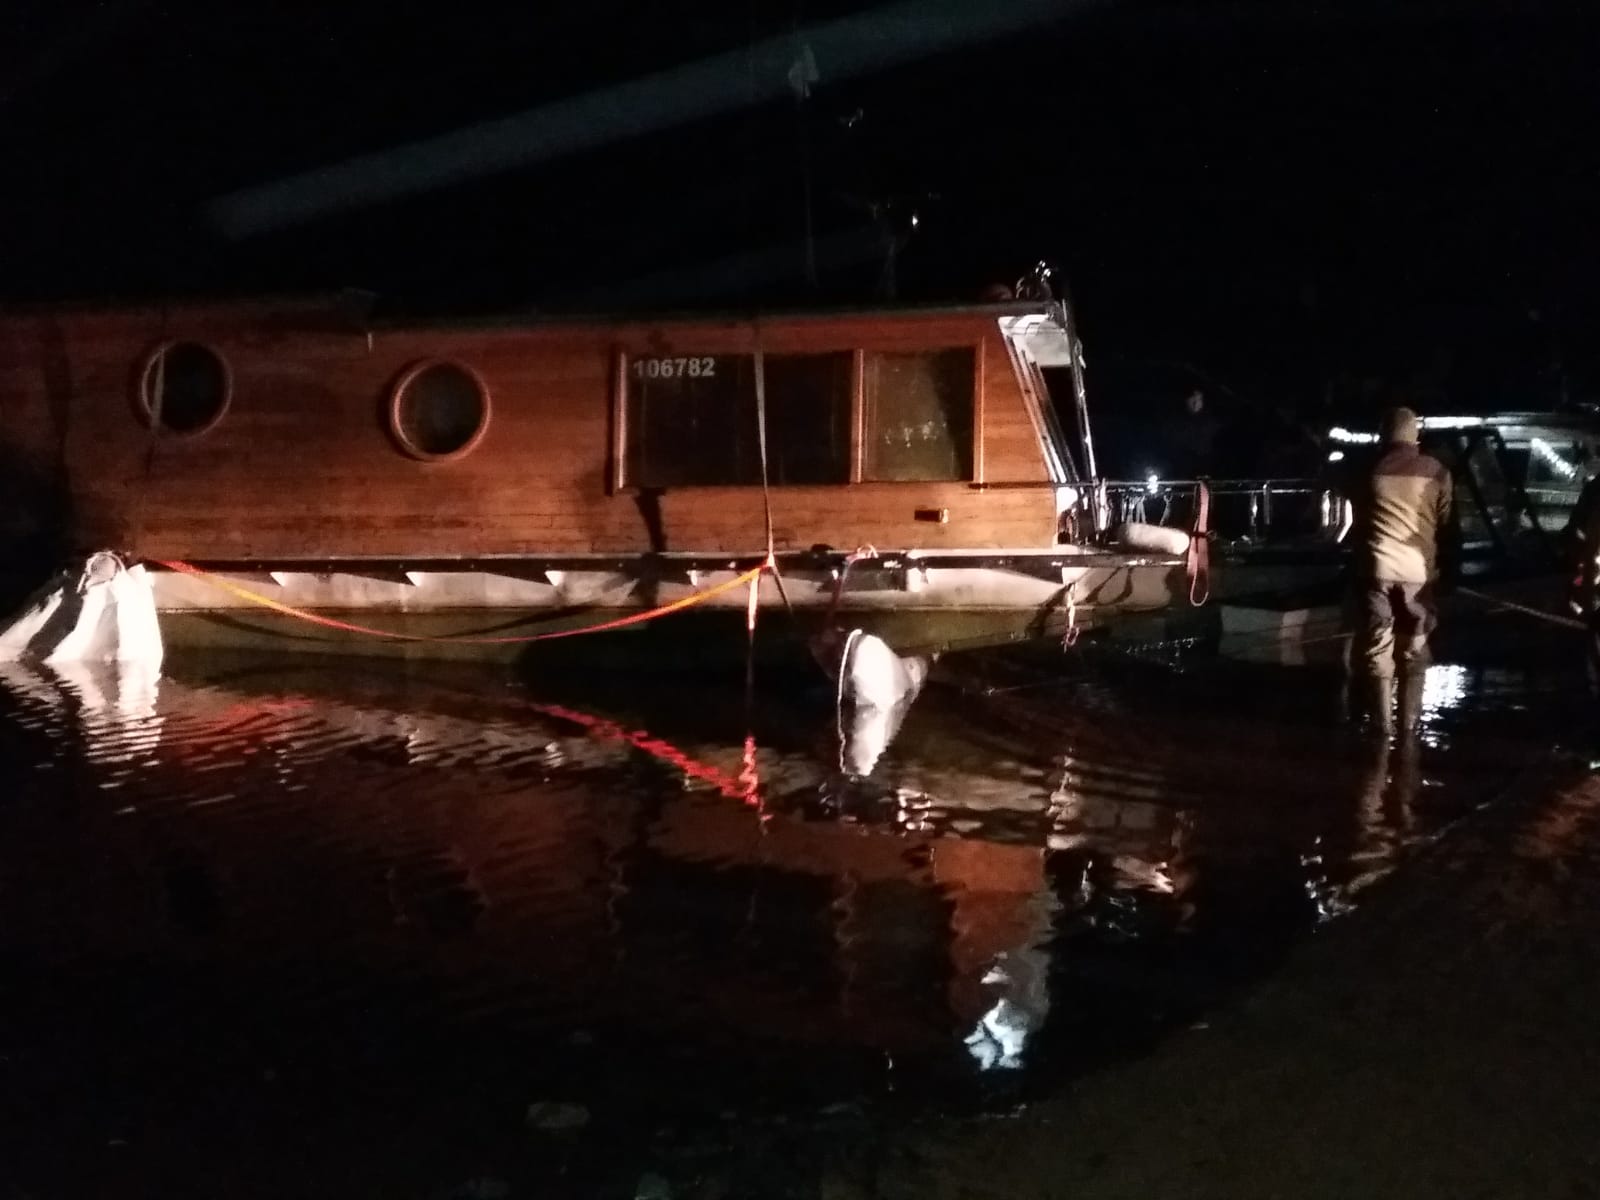 Vyzvednutí potopeného houseboatu, Radava - 5. a 6. 1. 2019 (9).jpg